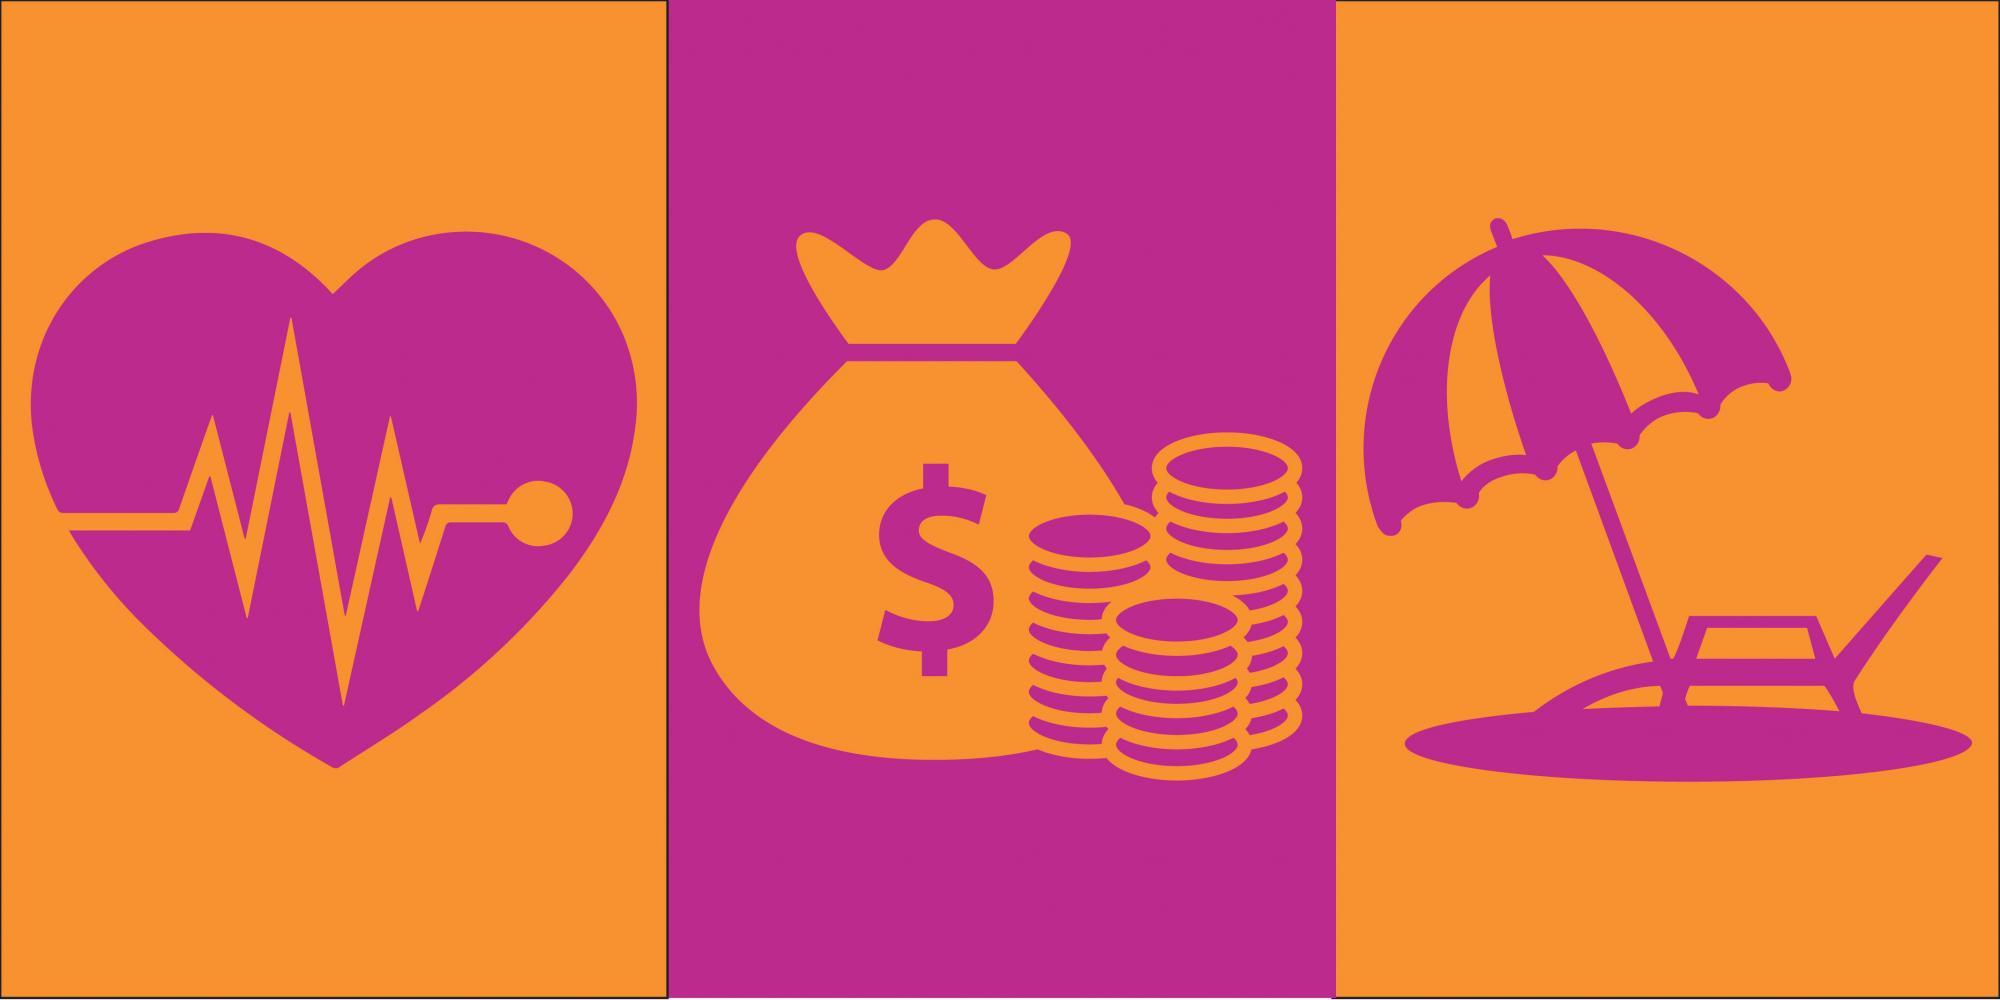 Heart icon, money icon, umbrella icon in orange and magenta